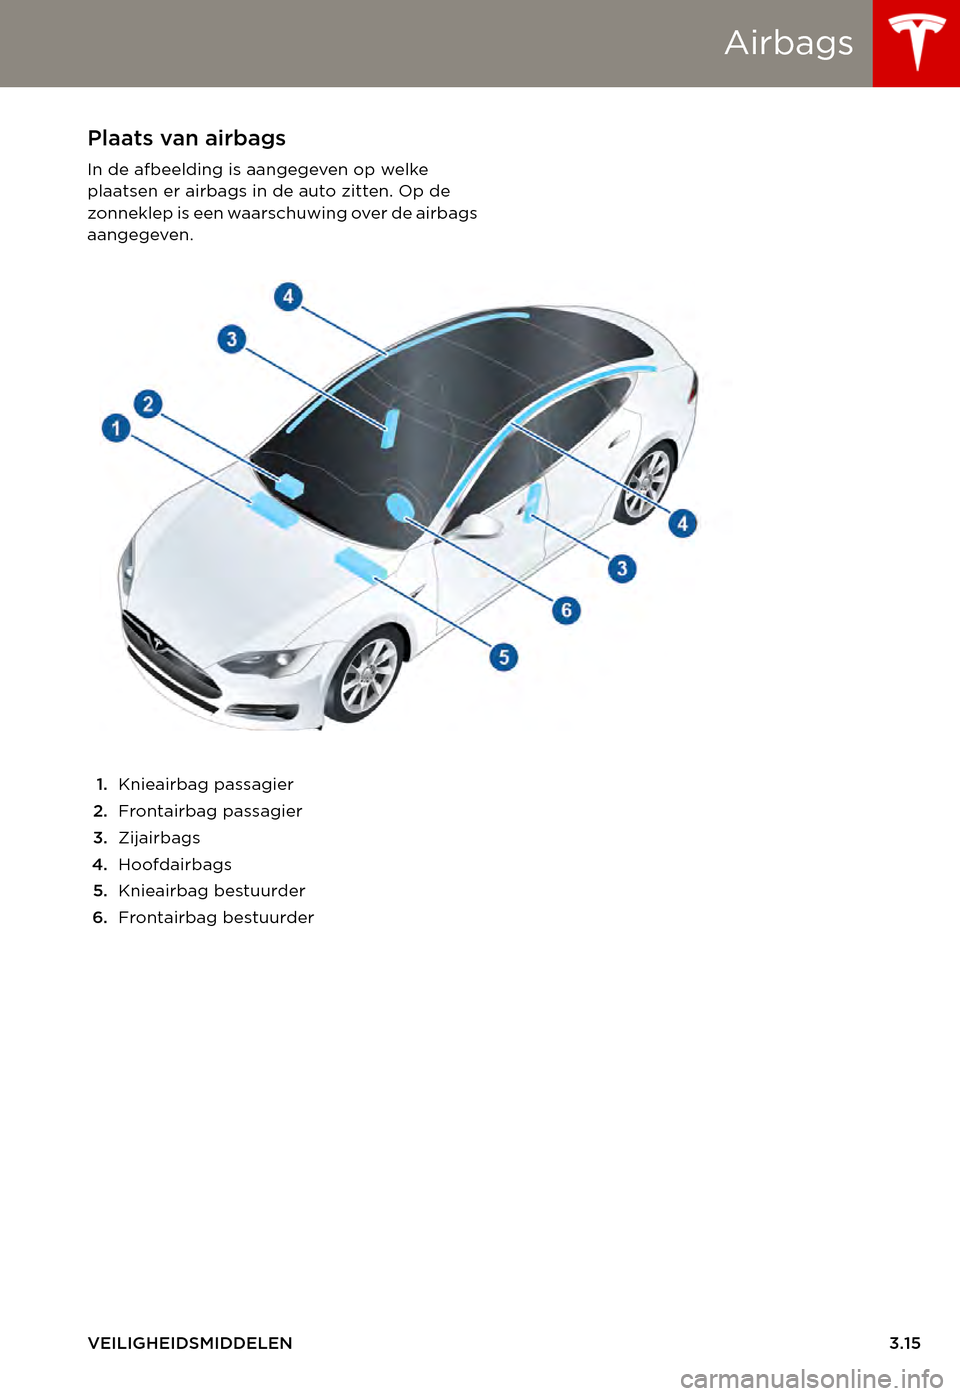 TESLA MODEL S 2015  Handleiding (in Dutch) Airbags
VEILIGHEIDSMIDDELEN3.15
AirbagsPlaats van airbags
In de afbeelding is aangegeven op welke plaatsen er airbags in de auto zitten. Op de zonneklep is een waarschuwing over de airbags aangegeven.